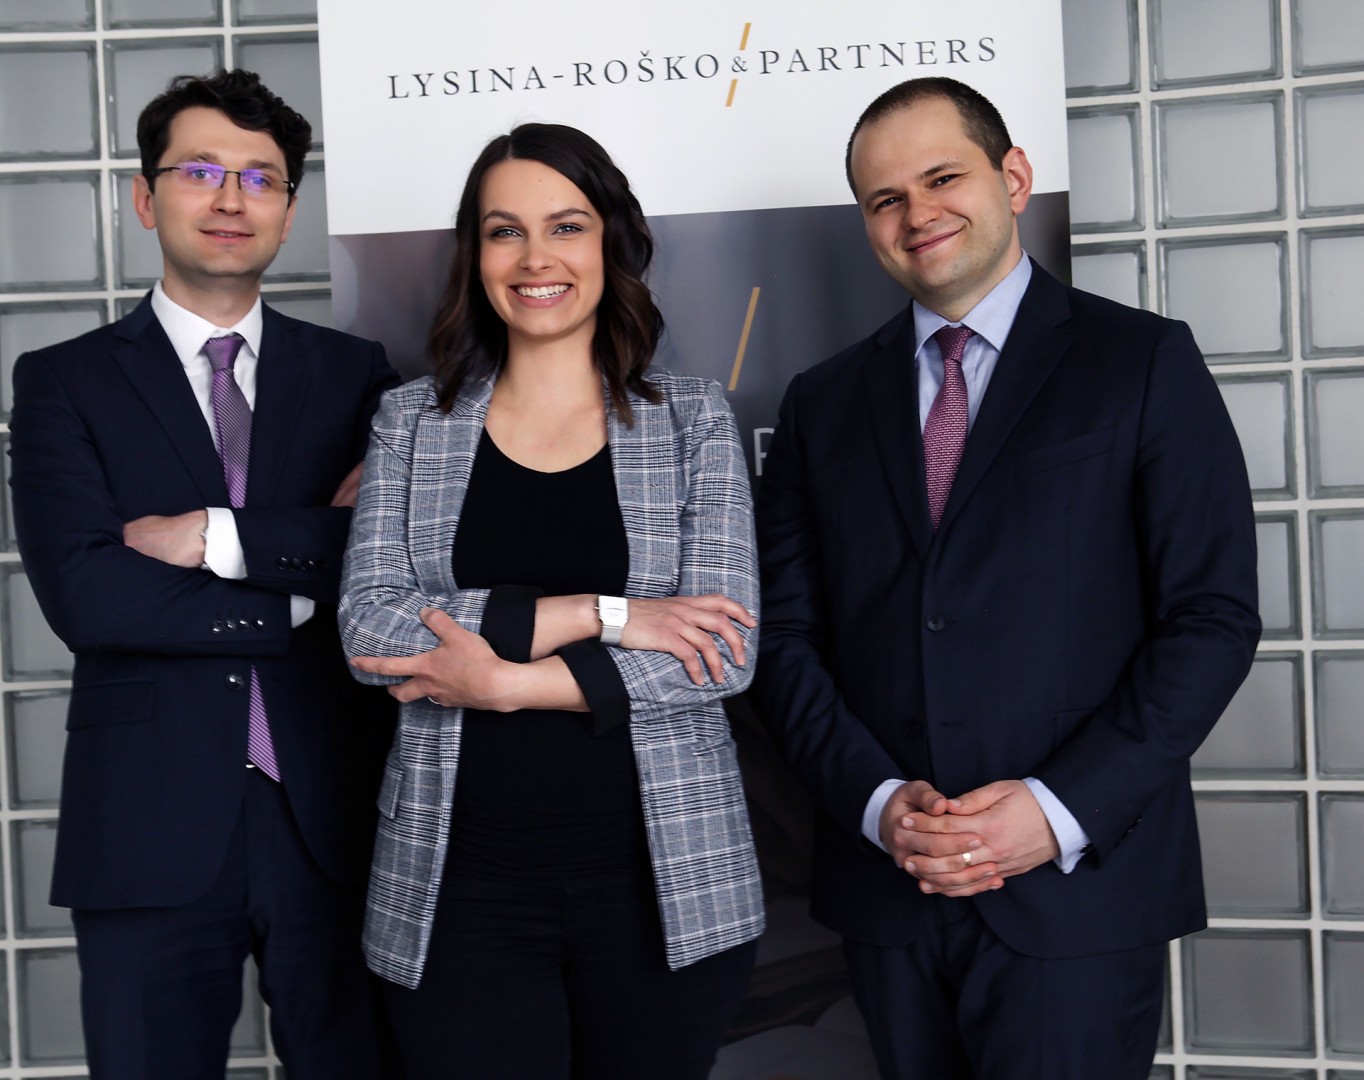 Barbora Balunová vstupuje do vedenia advokátskej kancelárie Lysina - Roško & Partners